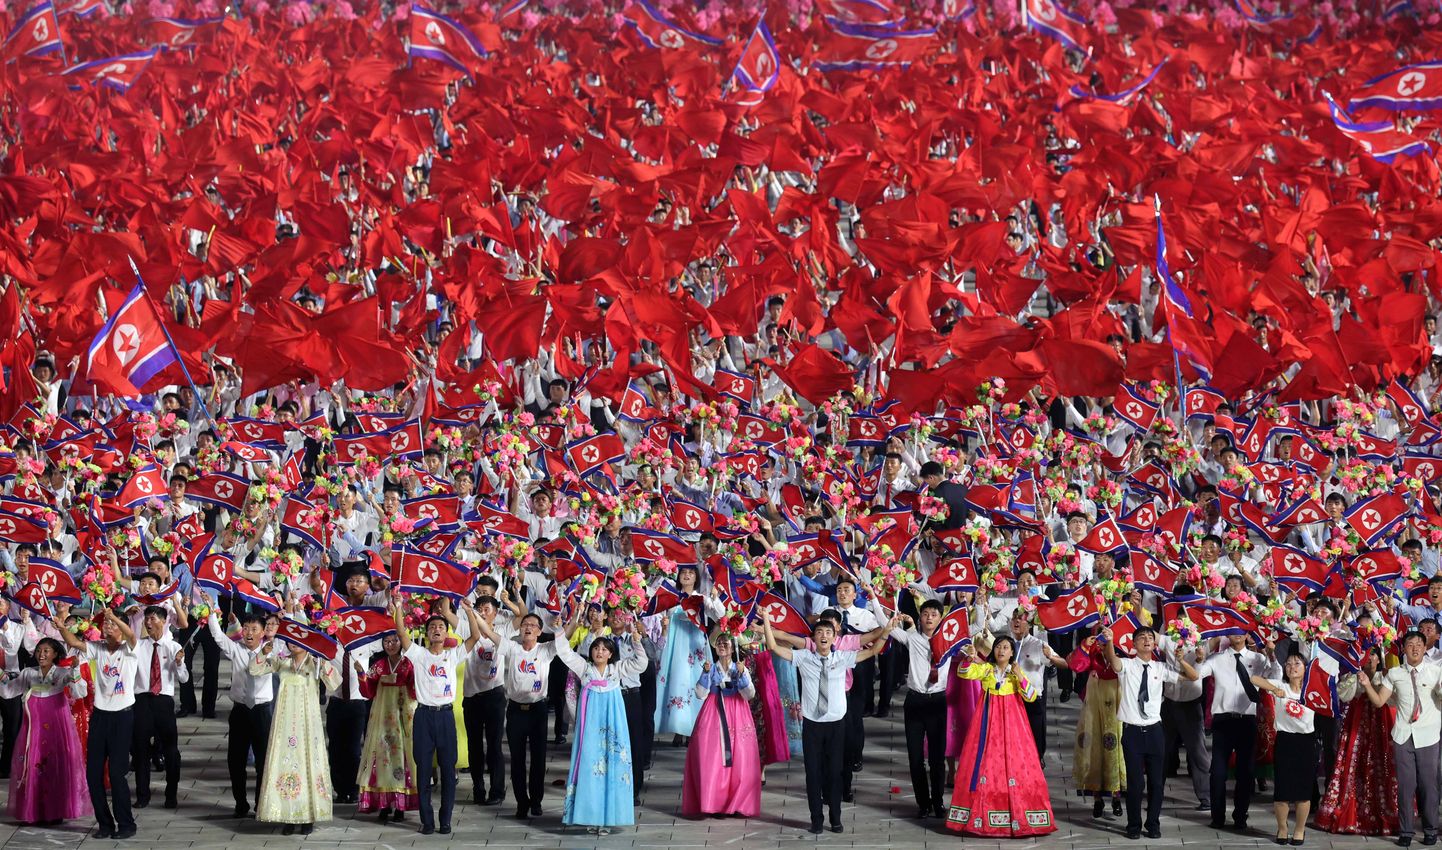 Põhja-Korea pealinnas Pyongyangis 27. juulil korraldatud sõjaväeparaadil tähistati suurejooneliselt stalinistliku riigi Isamaa Vabastussõja 70. võiduaastapäeva.